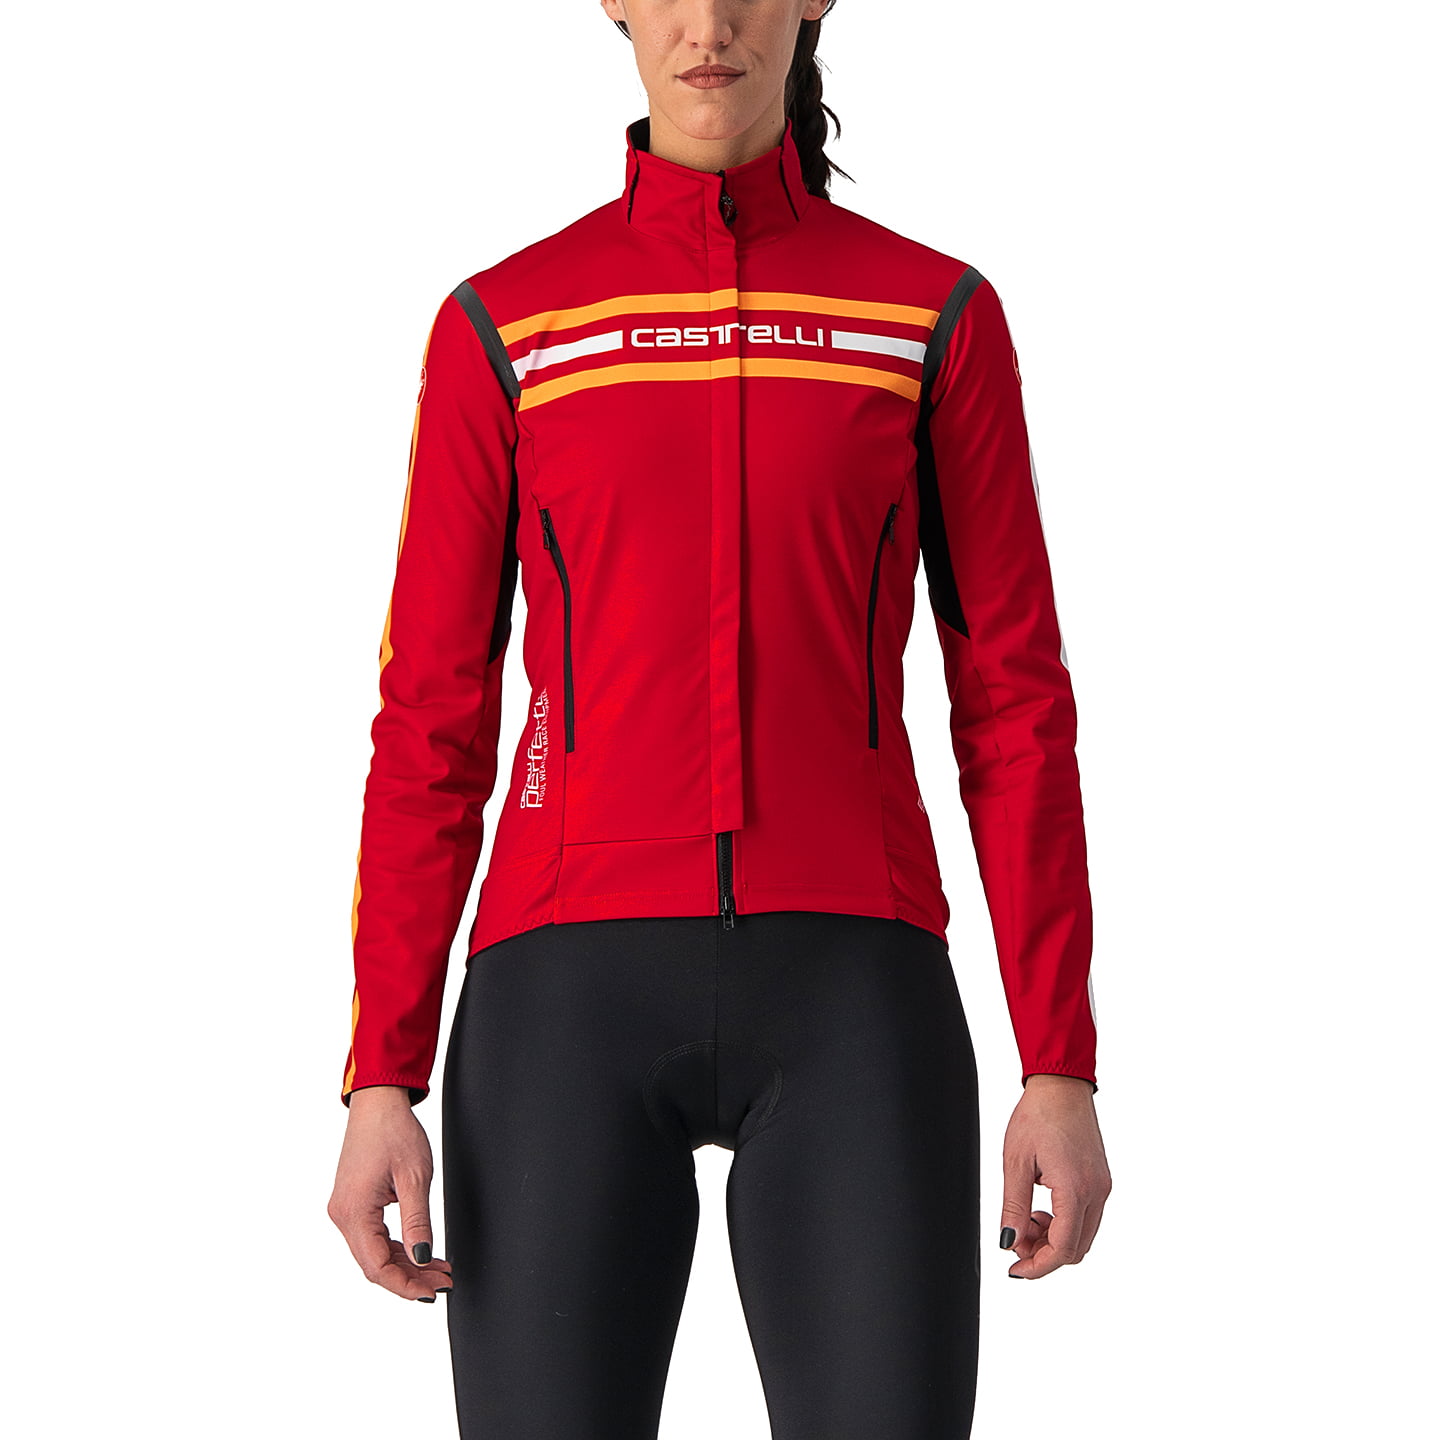 CASTELLI Perfetto RoS Unlimited Edt. Women’s Light Jacket Light Jacket, size M, Bike jacket, Cycling clothing